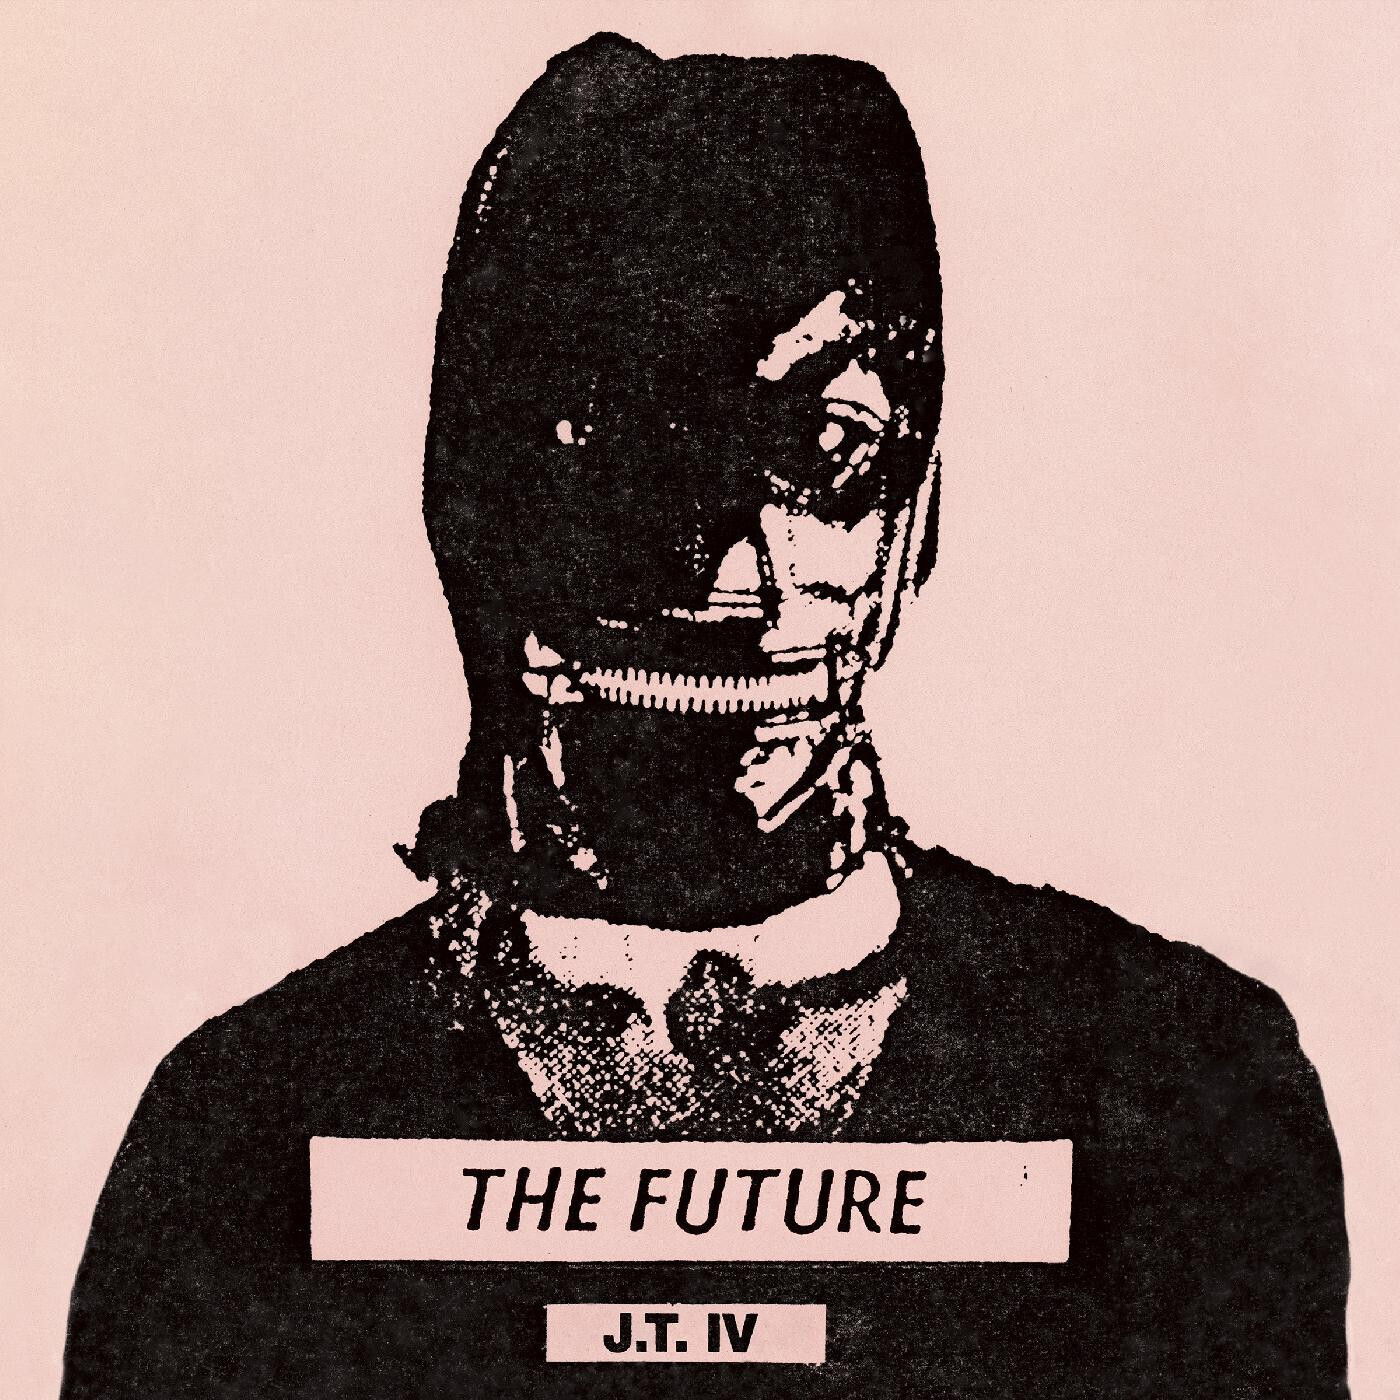 J.T. IV "The Future"